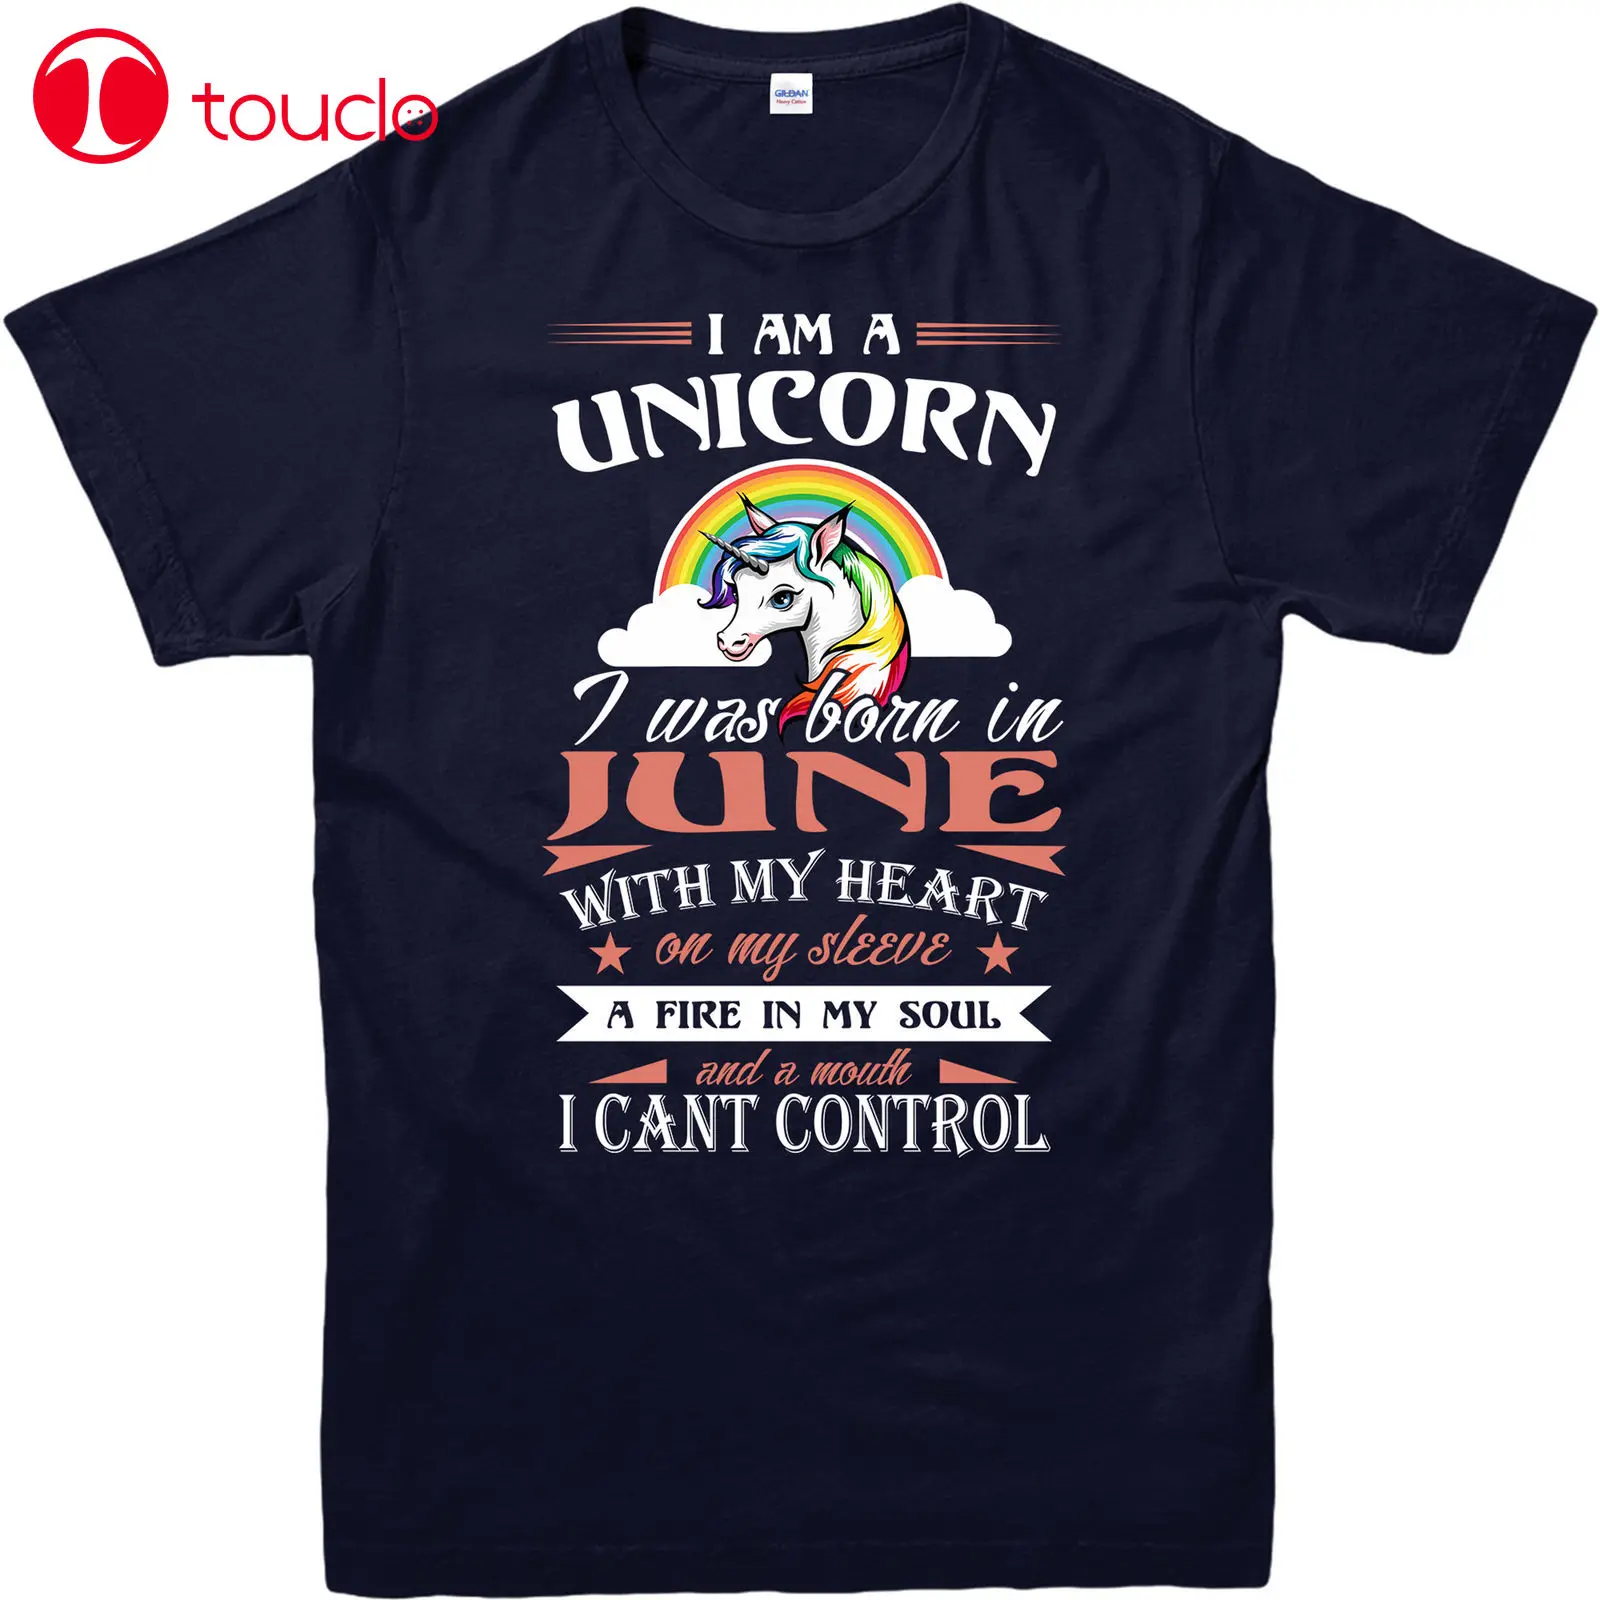 Фото Футболка с надписью I Am A Unicorn футболка в летнем стиле Born In June With My Heart Fire Soul